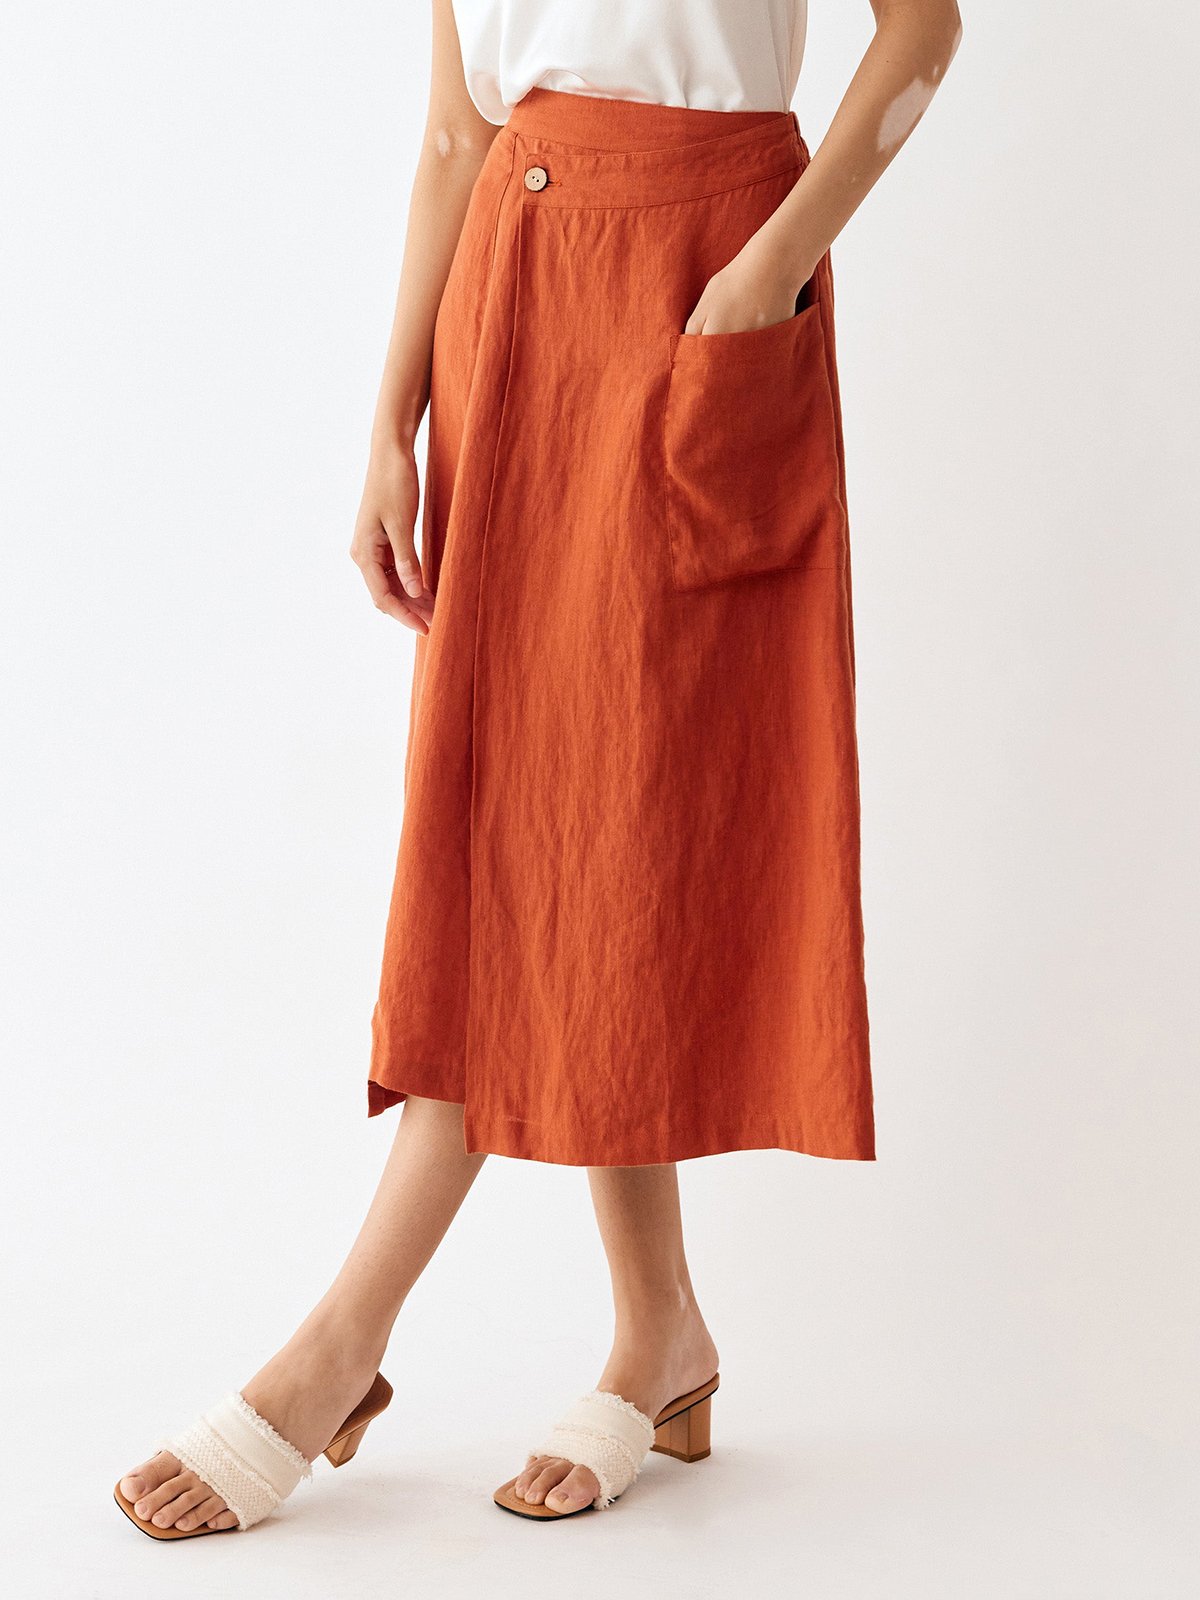 Cleo 100% Linen Orange Red Skirt